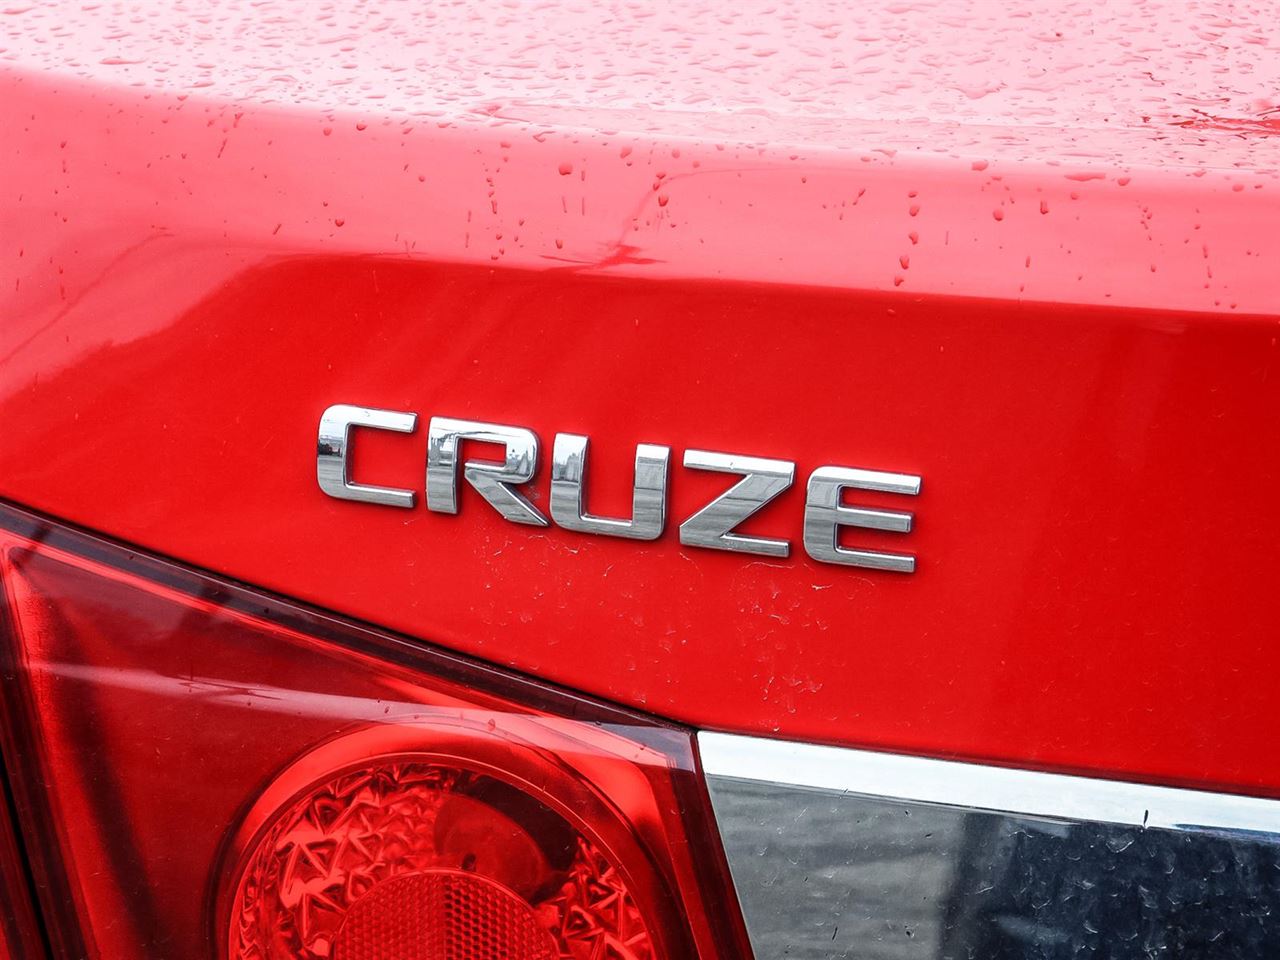 2015 Chevrolet Cruze